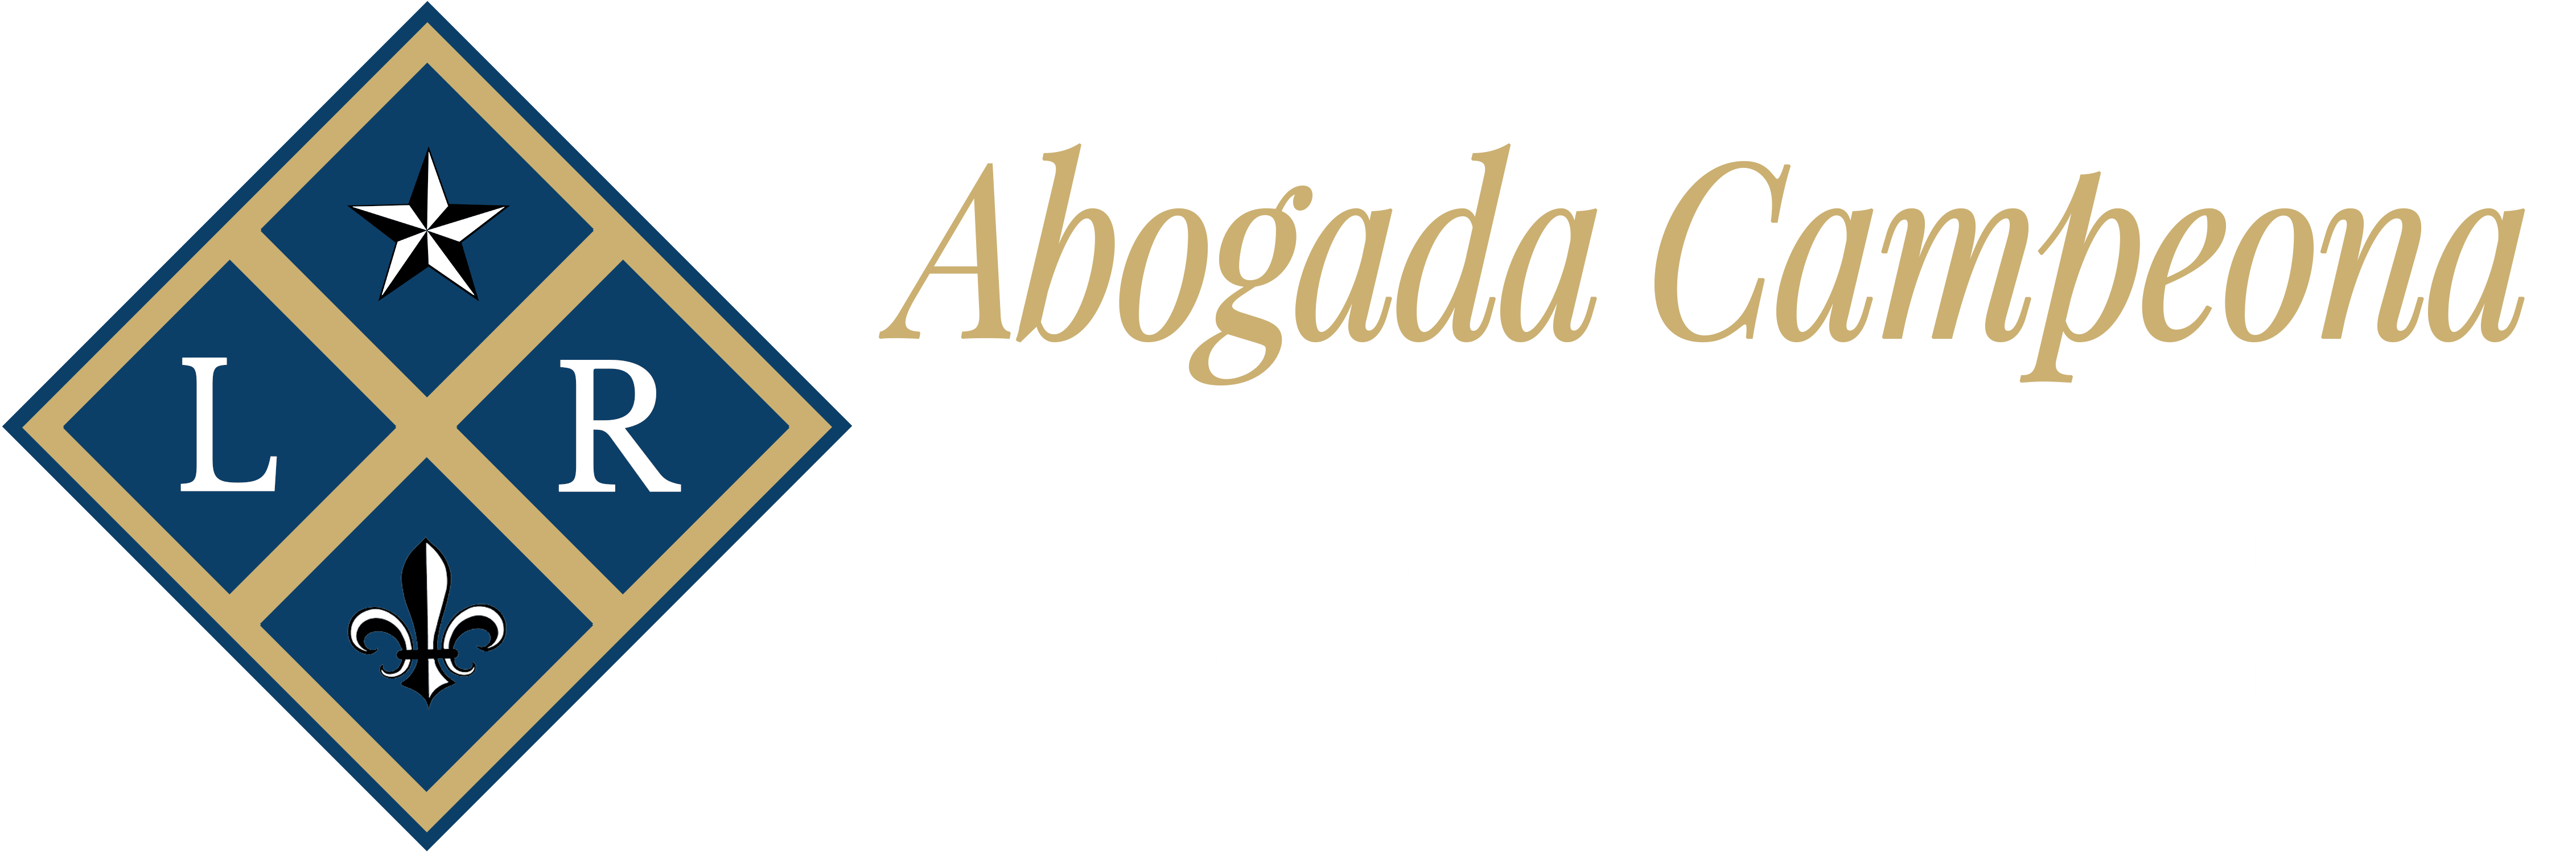 Abogada Campeona-Laura Rodriguez